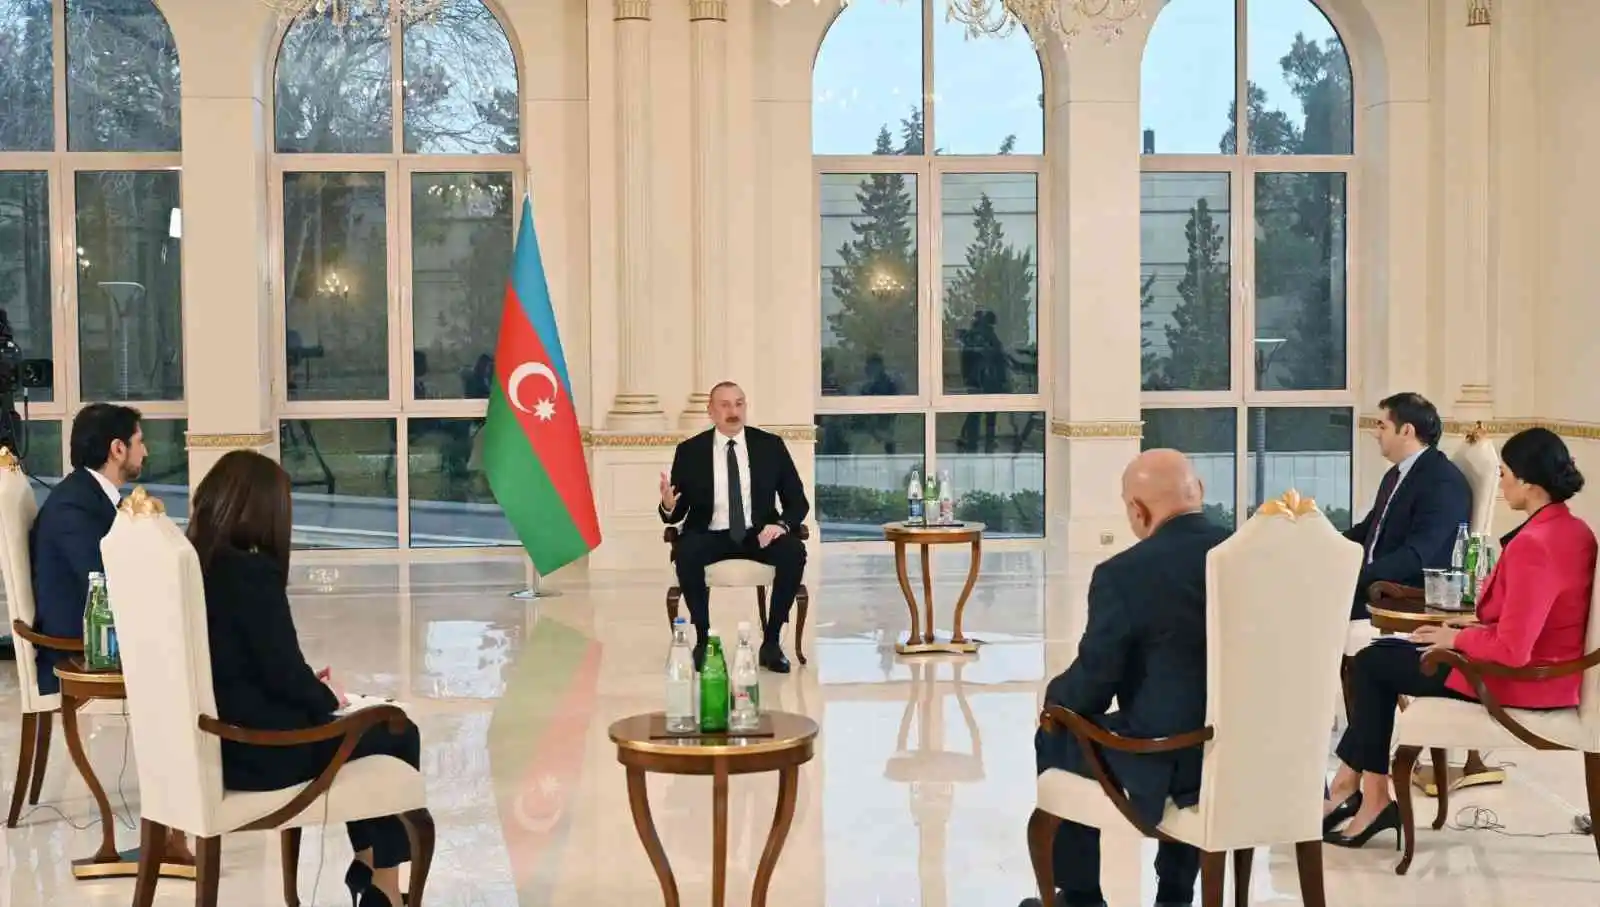 Azerbaycan Cumhurbaşkanı Aliyev: “Ermeni tarafı müzakere sürecini aksatıyor”
